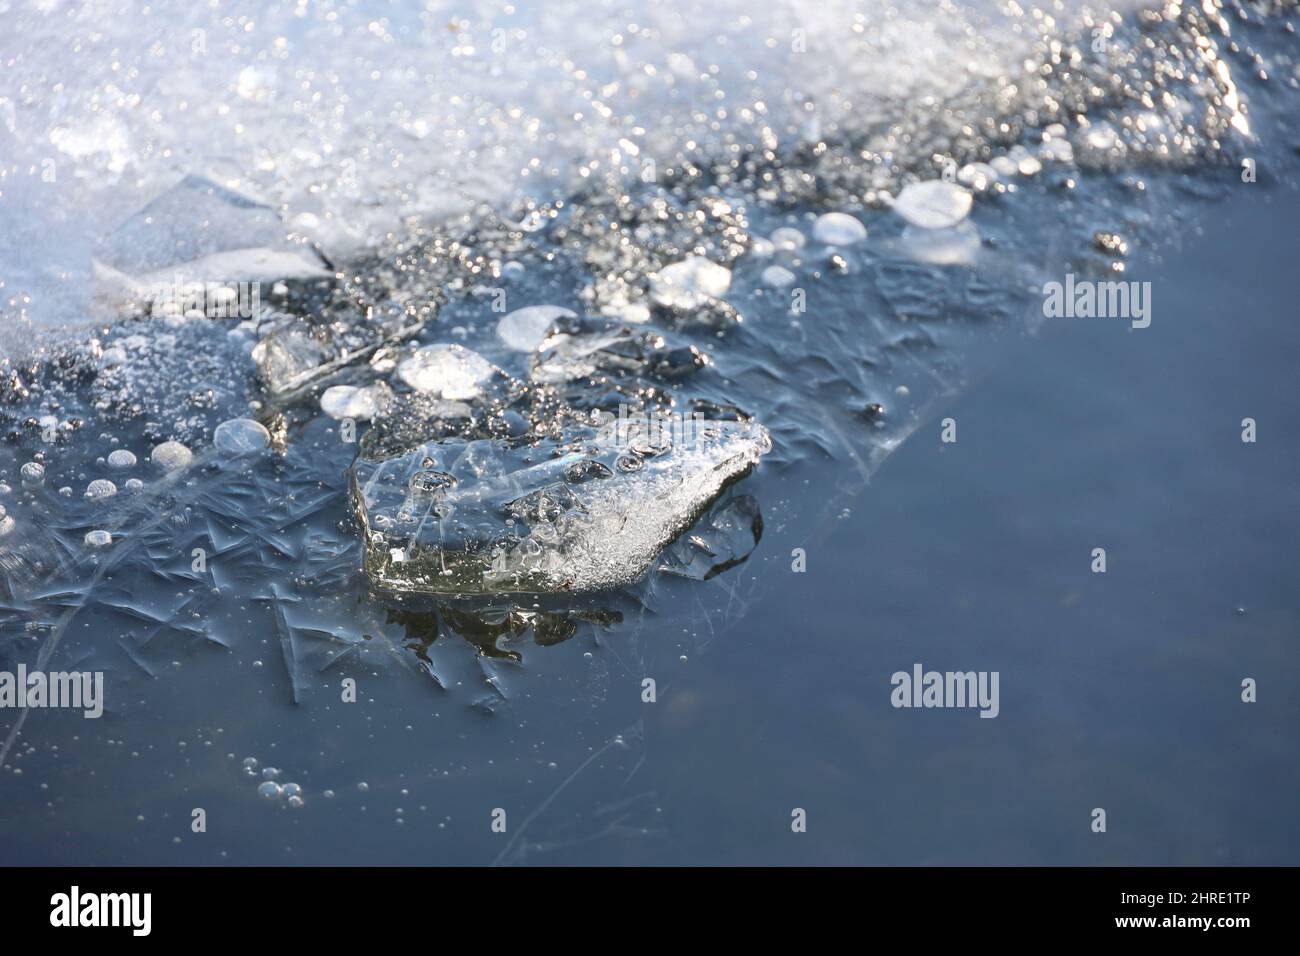 Sciogliendo il ghiaccio sul fiume. Bordo di ghiaccio sulla riva ghiacciata, inizio della stagione primaverile Foto Stock